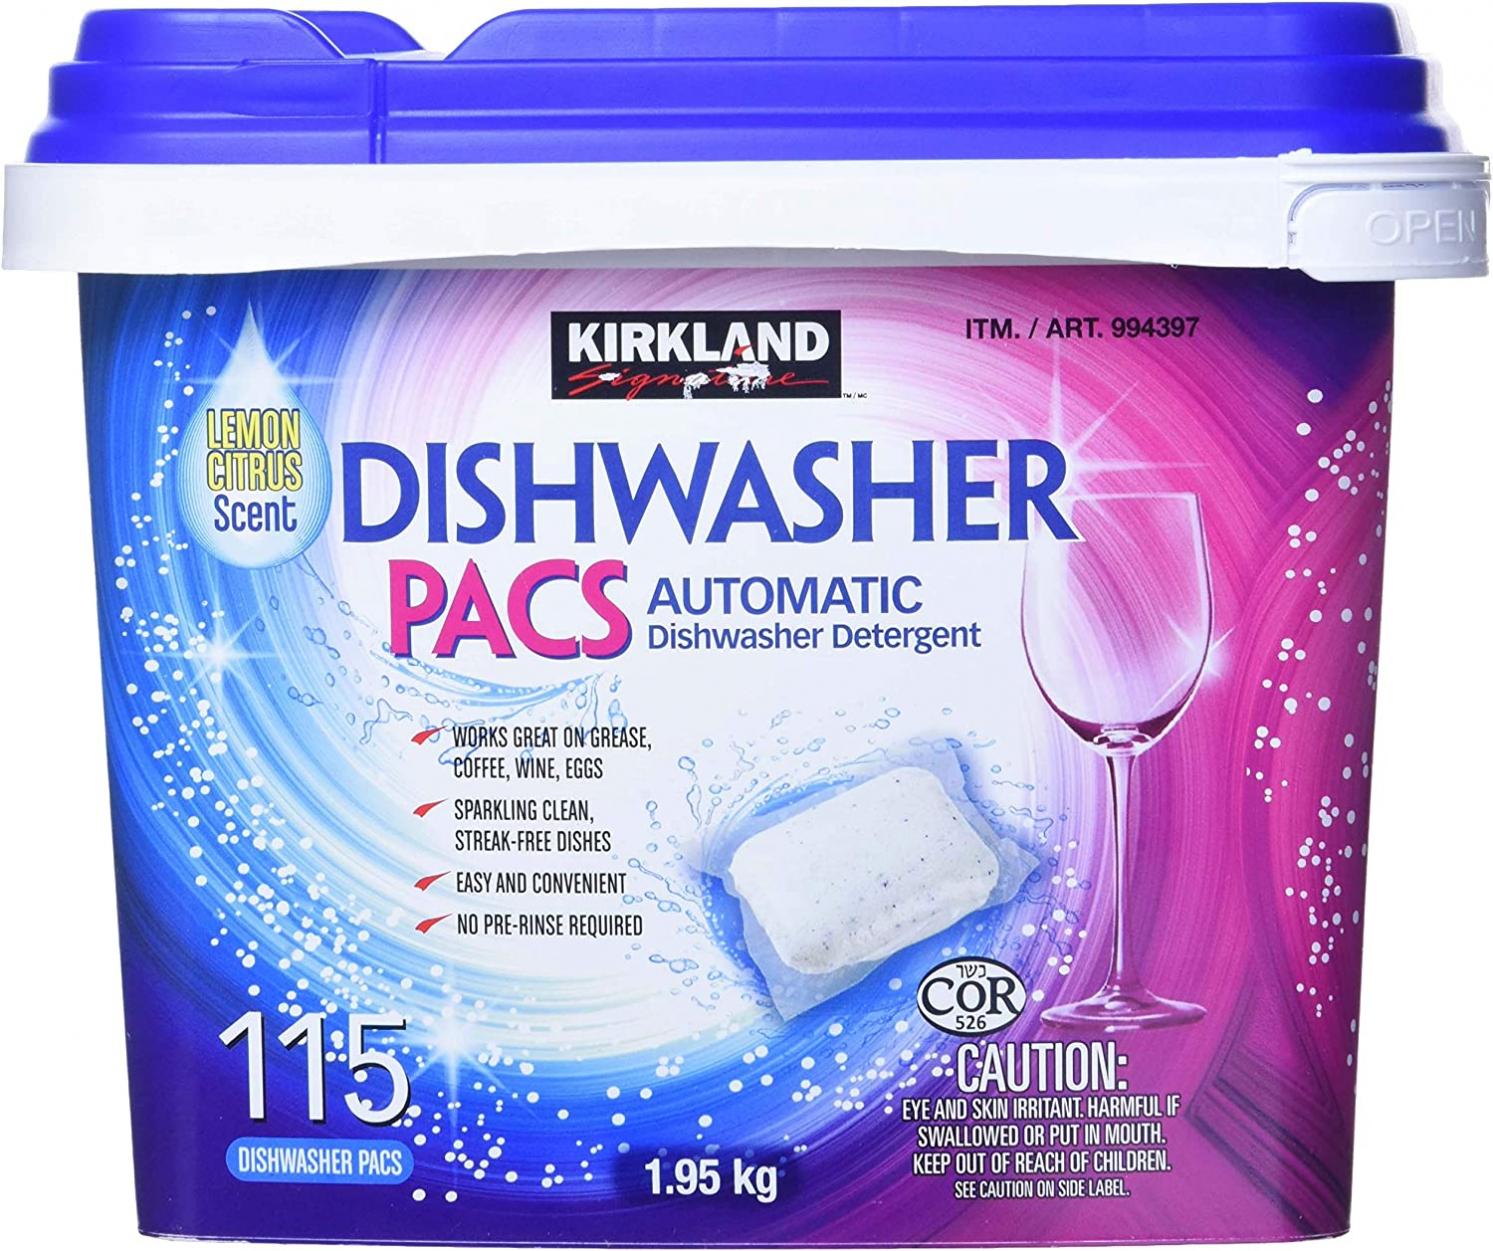 Kirkland Signature Easy to Use, Streak Free Premium Dishwasher Pacs, Automatic Dishwasher Detergent